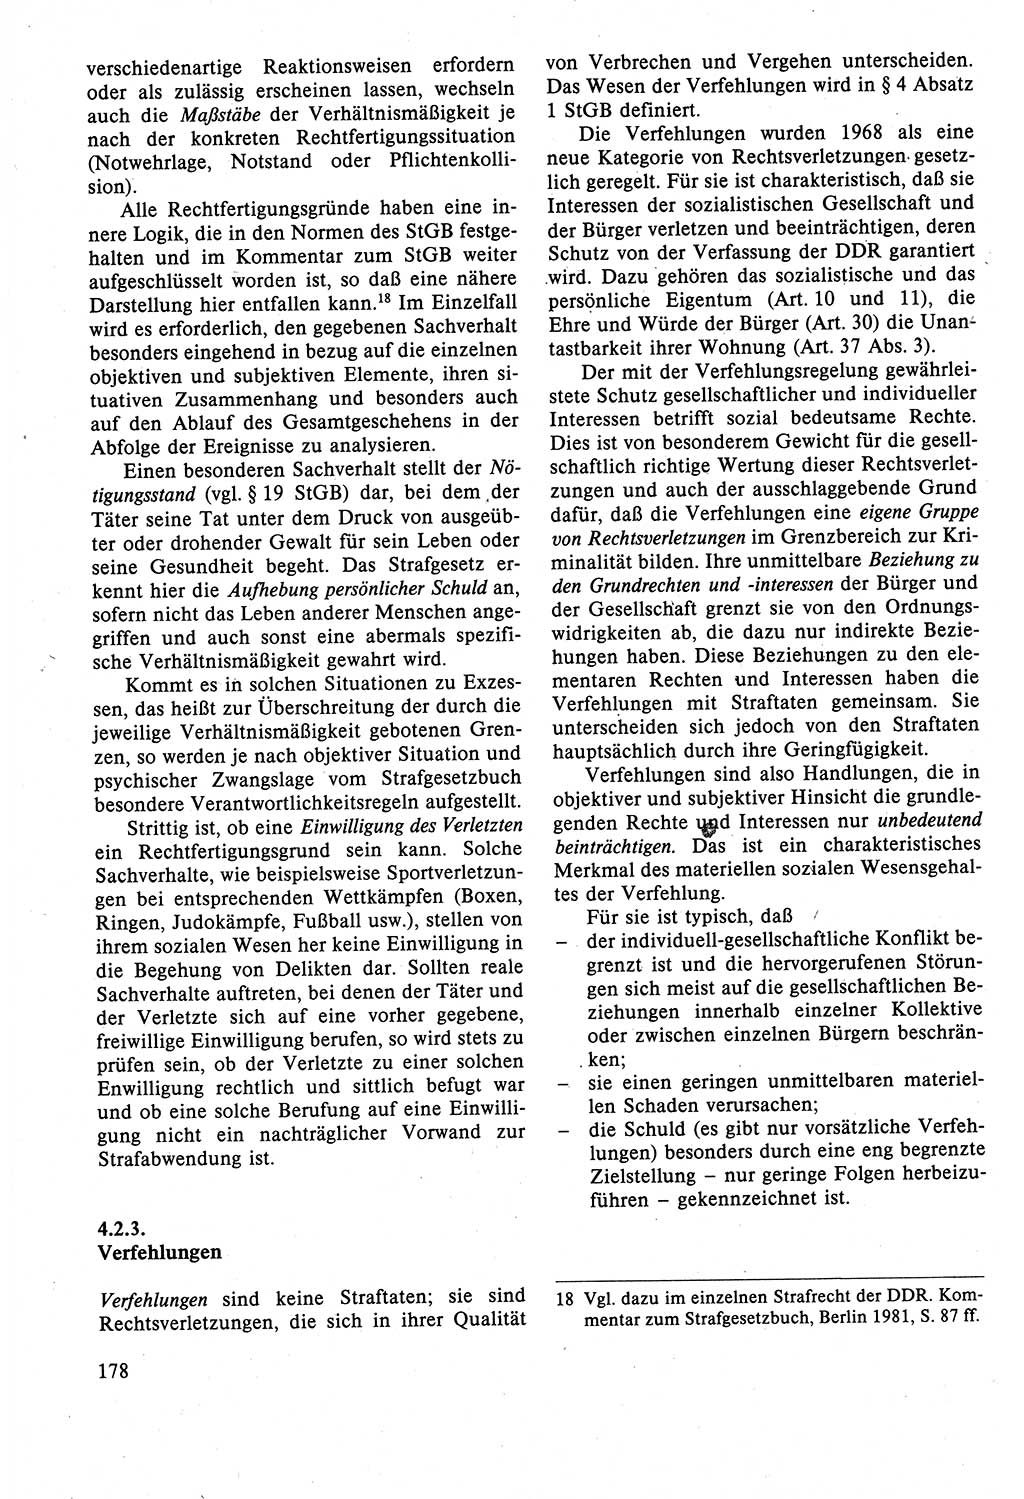 Strafrecht der DDR (Deutsche Demokratische Republik), Lehrbuch 1988, Seite 178 (Strafr. DDR Lb. 1988, S. 178)